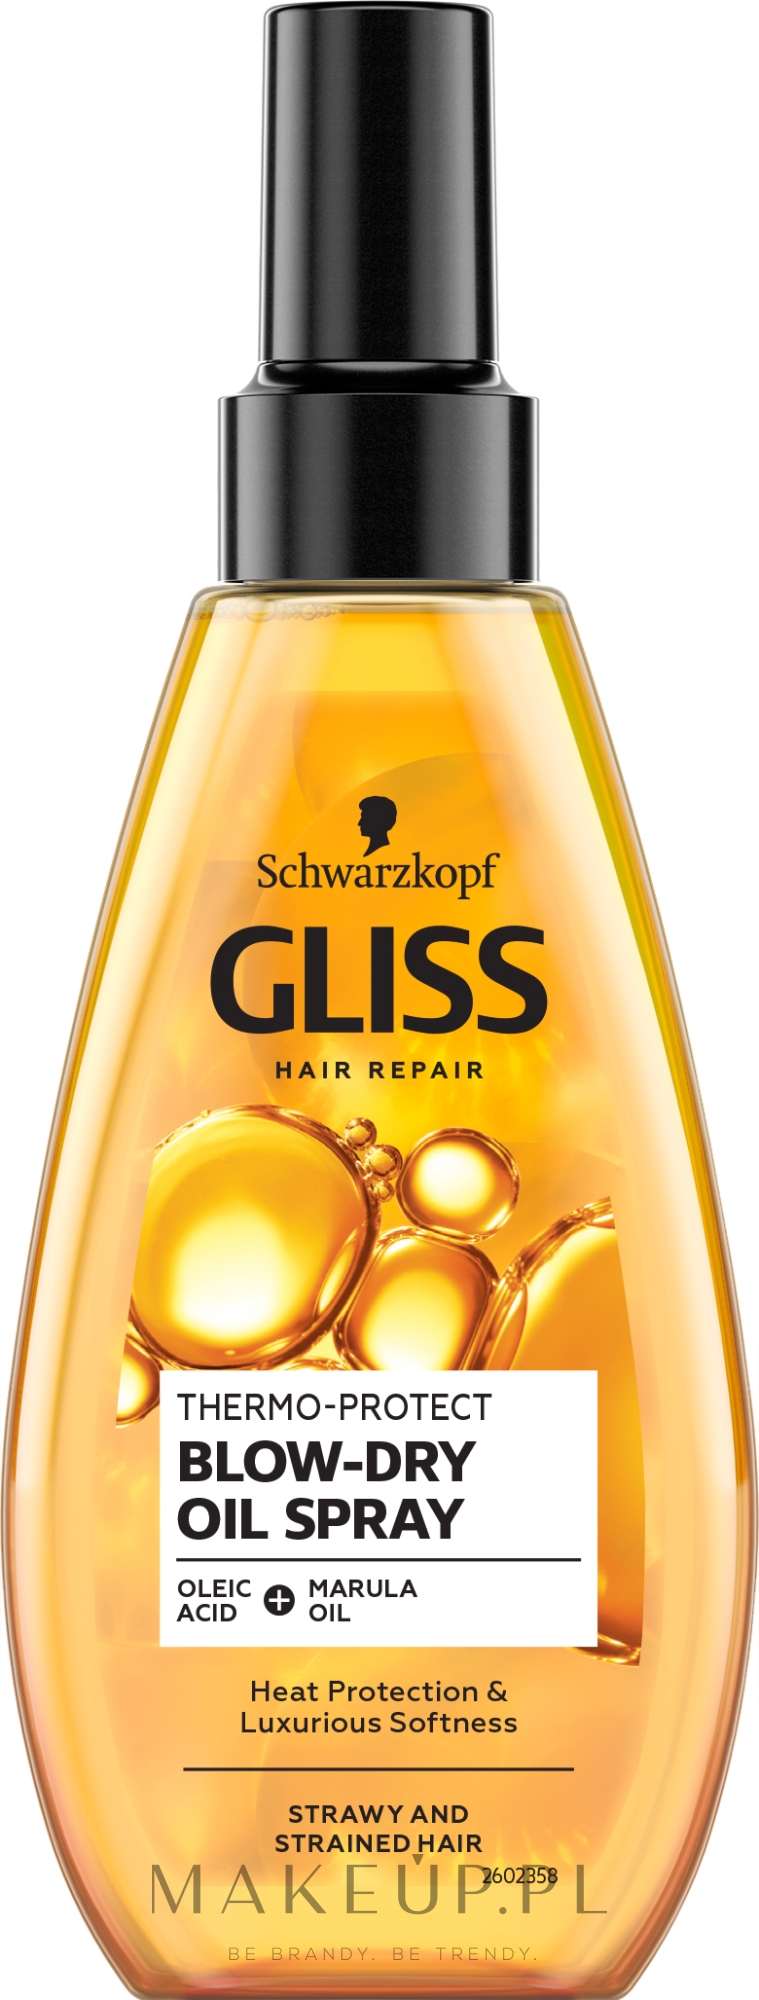 gliss kur thermo-protect termoochronny olejek do włosów wizaz